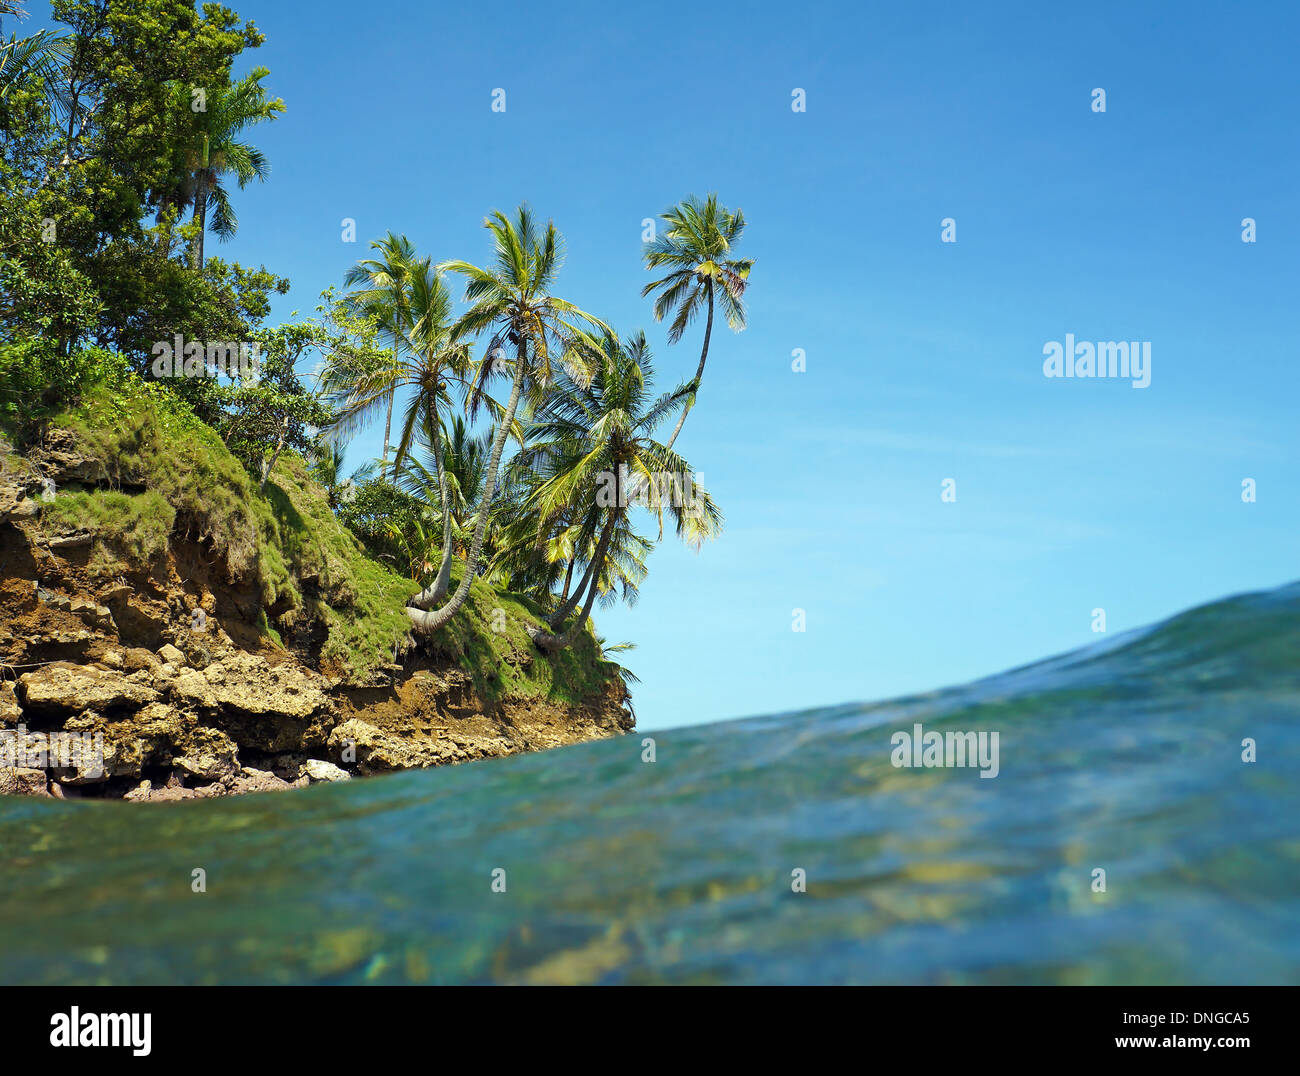 Vista dalla superficie dell'acqua con isolotto e palme di cocco, il mare dei Caraibi, Bocas del Toro, Panama Foto Stock